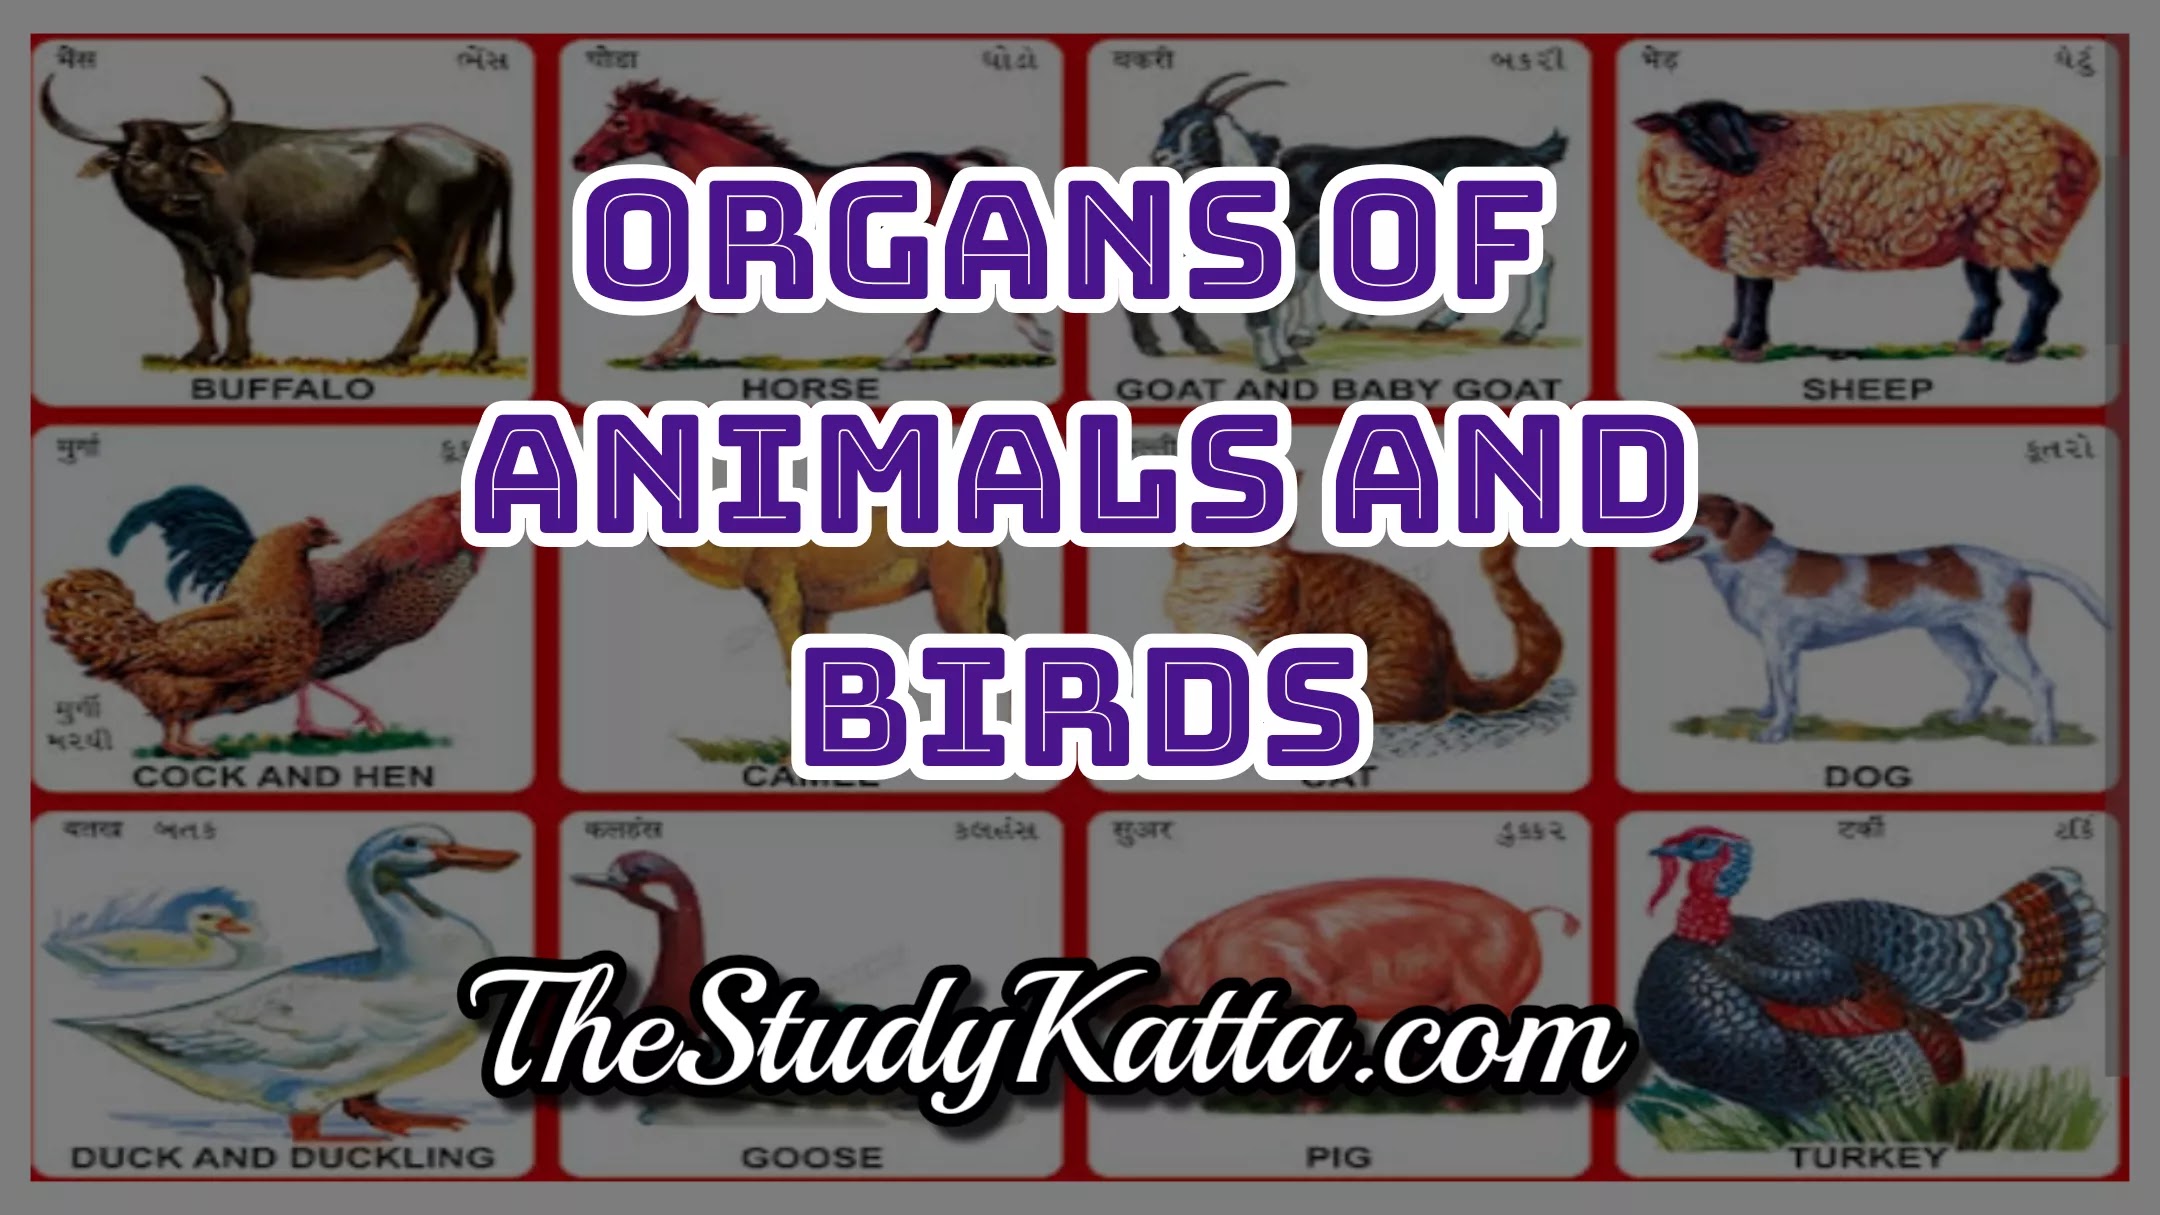 Animal Body Parts Name in English Organs of Animals and Birds प्राणी व पक्षांच्या शरीराच्या अवयवांची नावे